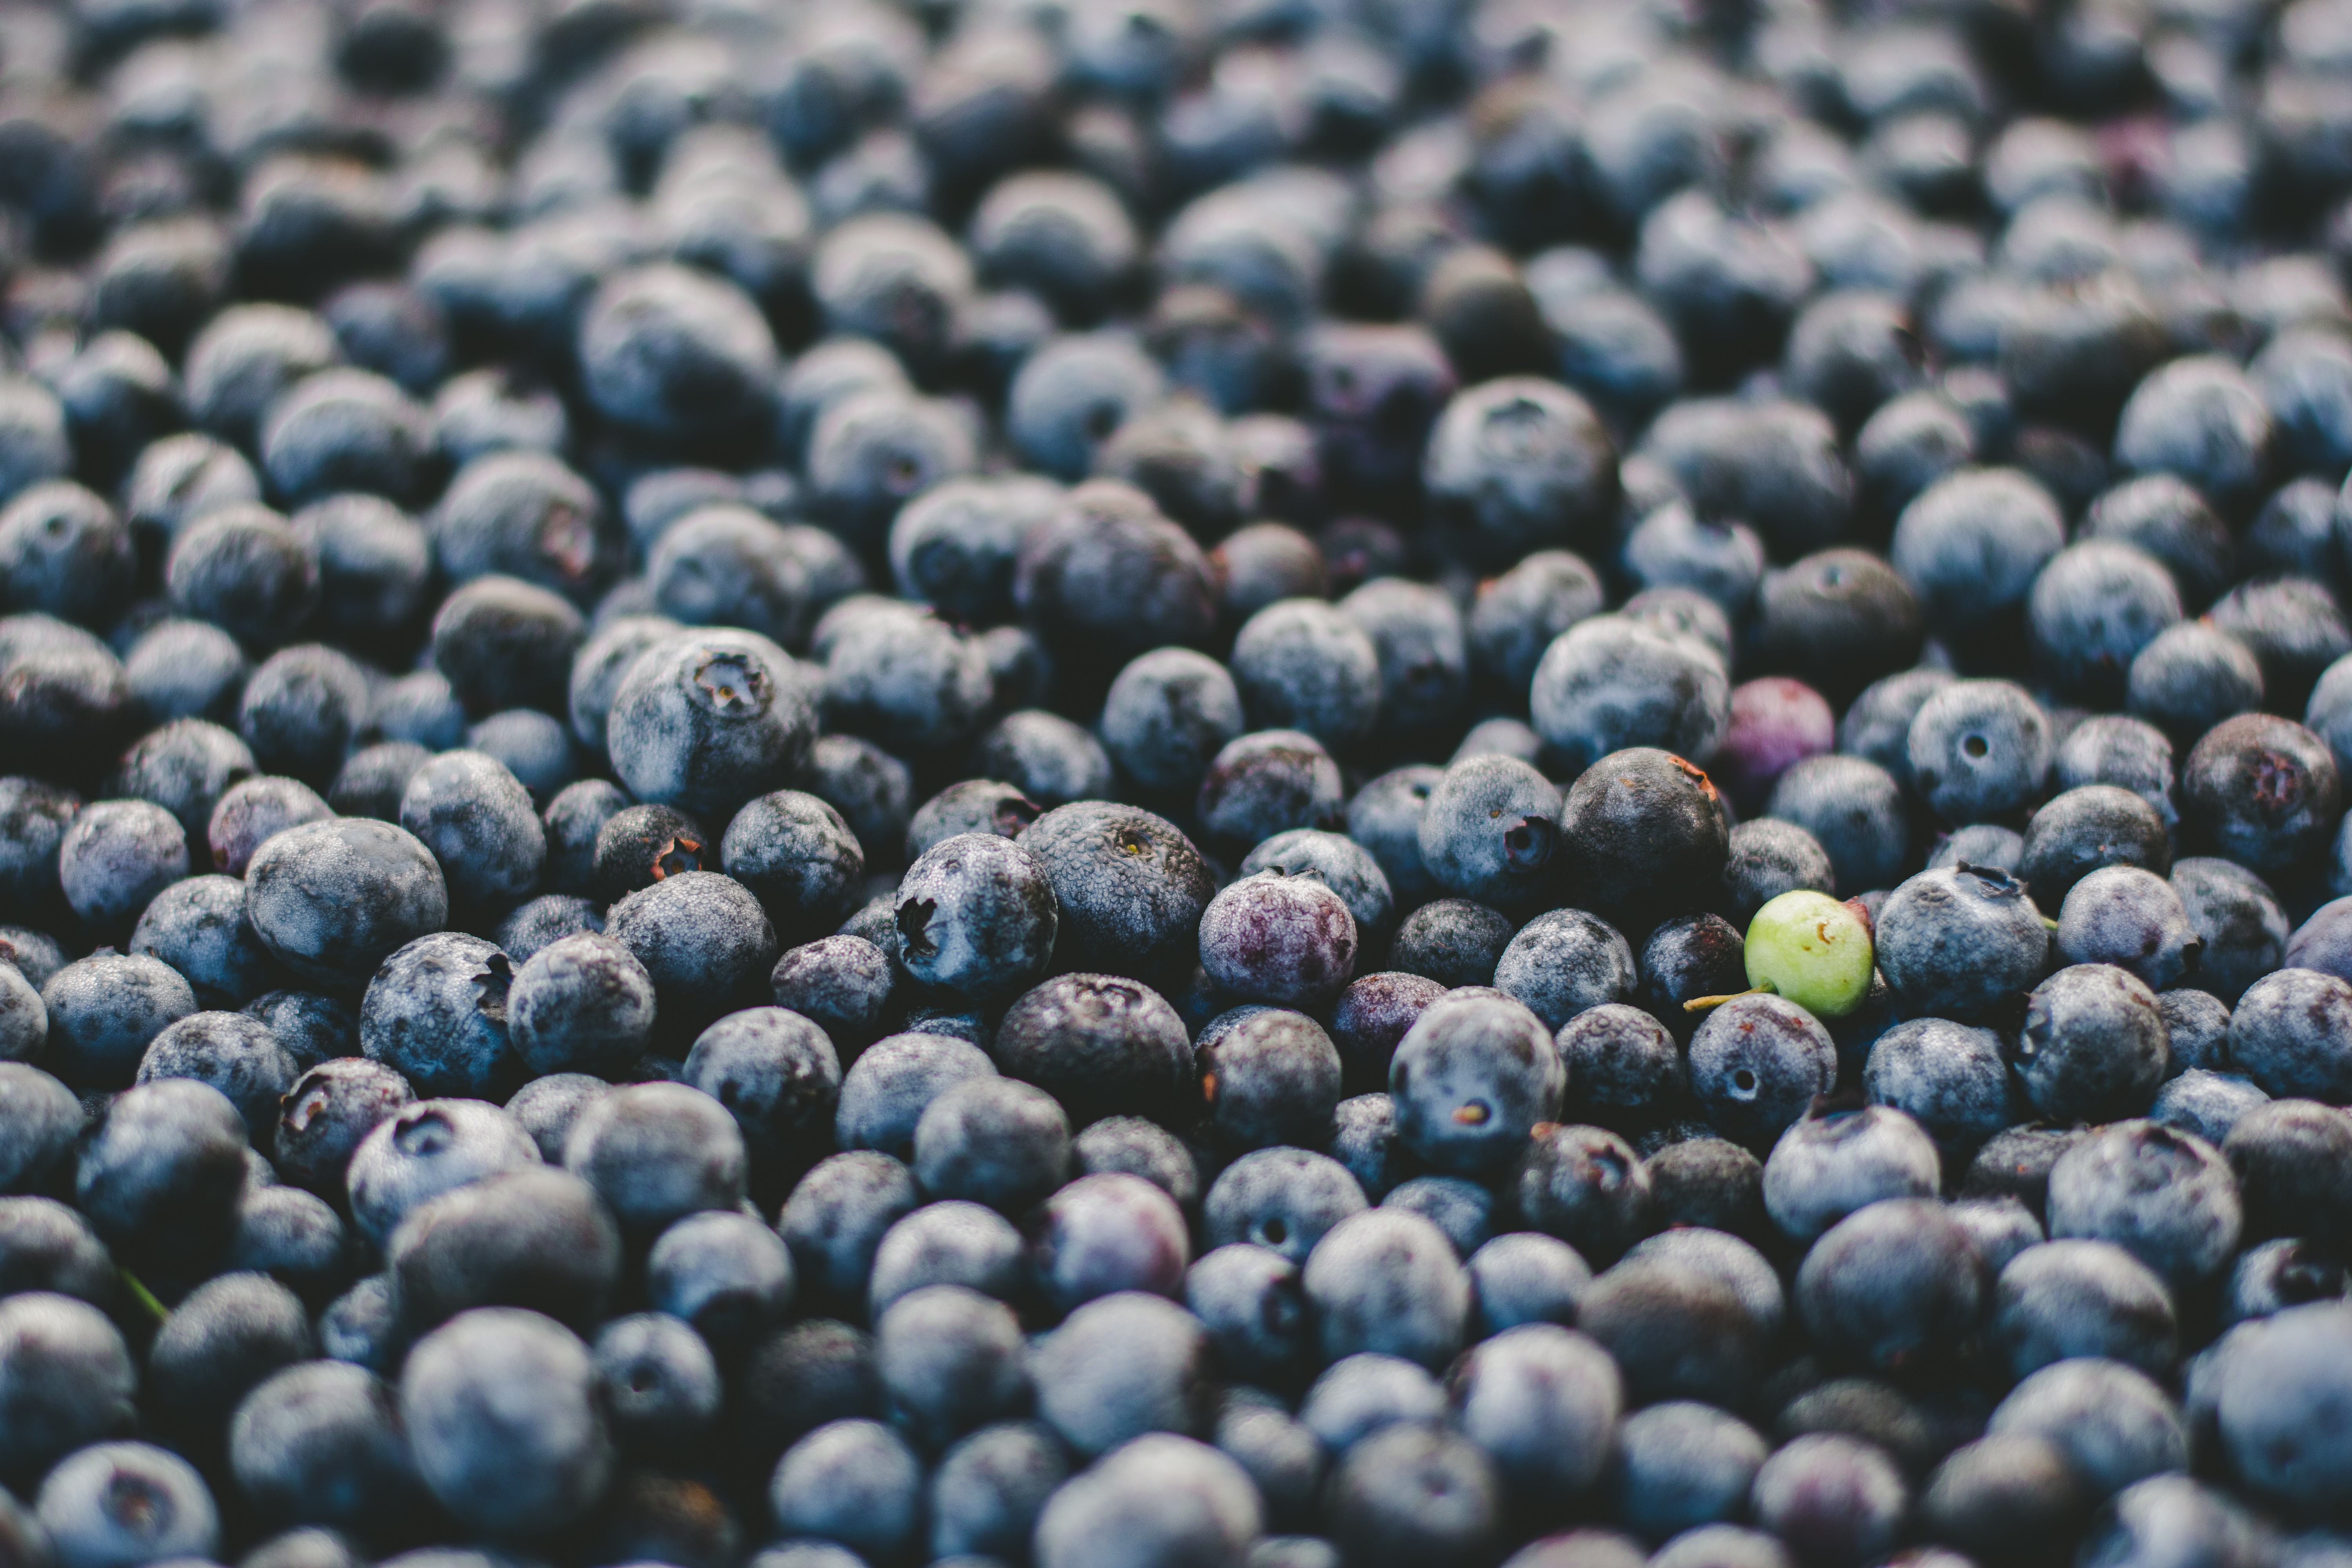 General 6000x4000 fruit blueberries macro food blue berries